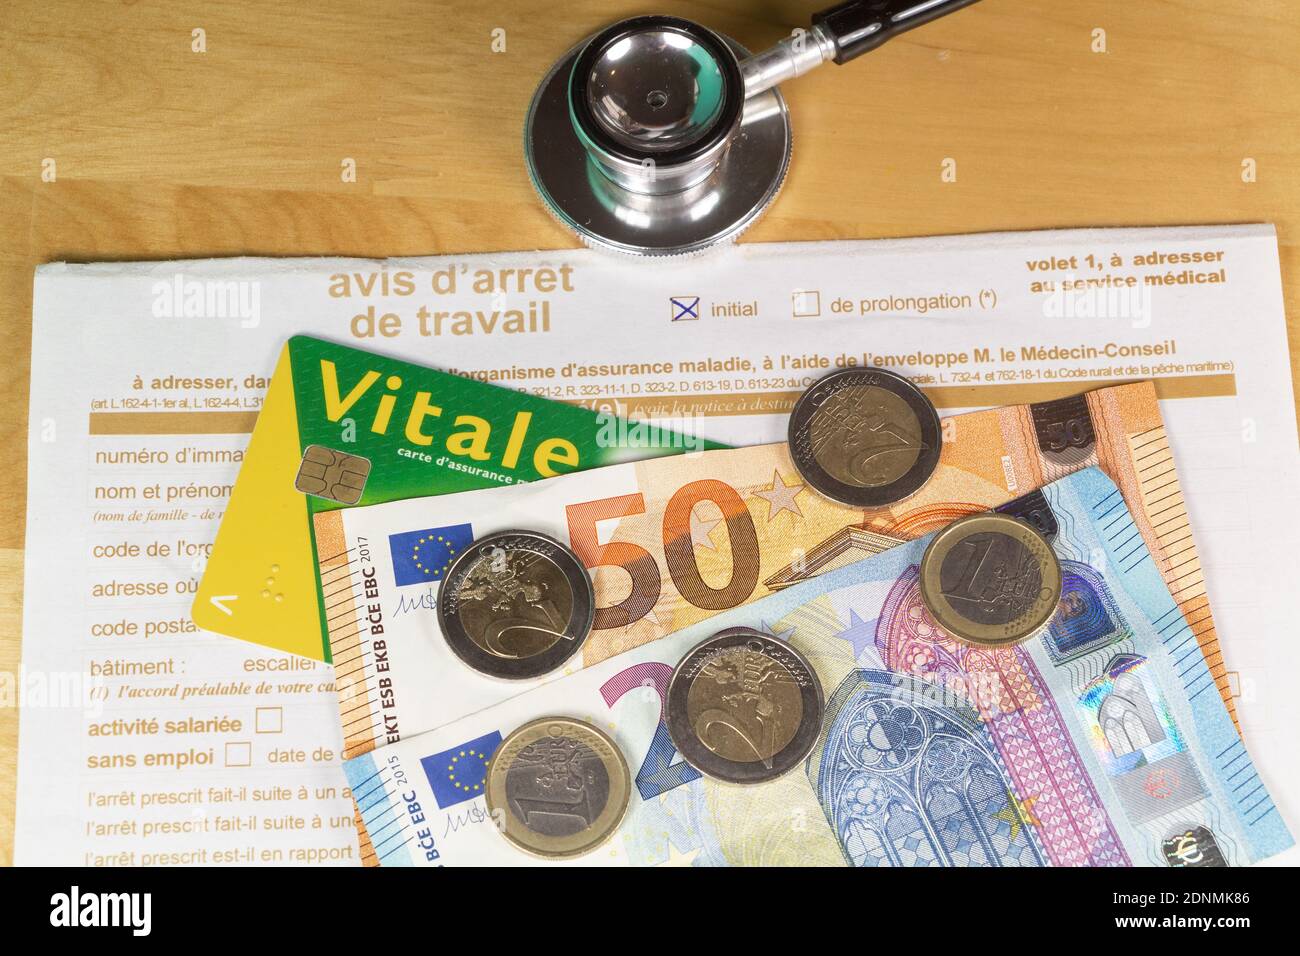 Avis d'arrêt de travail médical écrit en français, carte vitale, stéthoscope noir et argent euro Banque D'Images